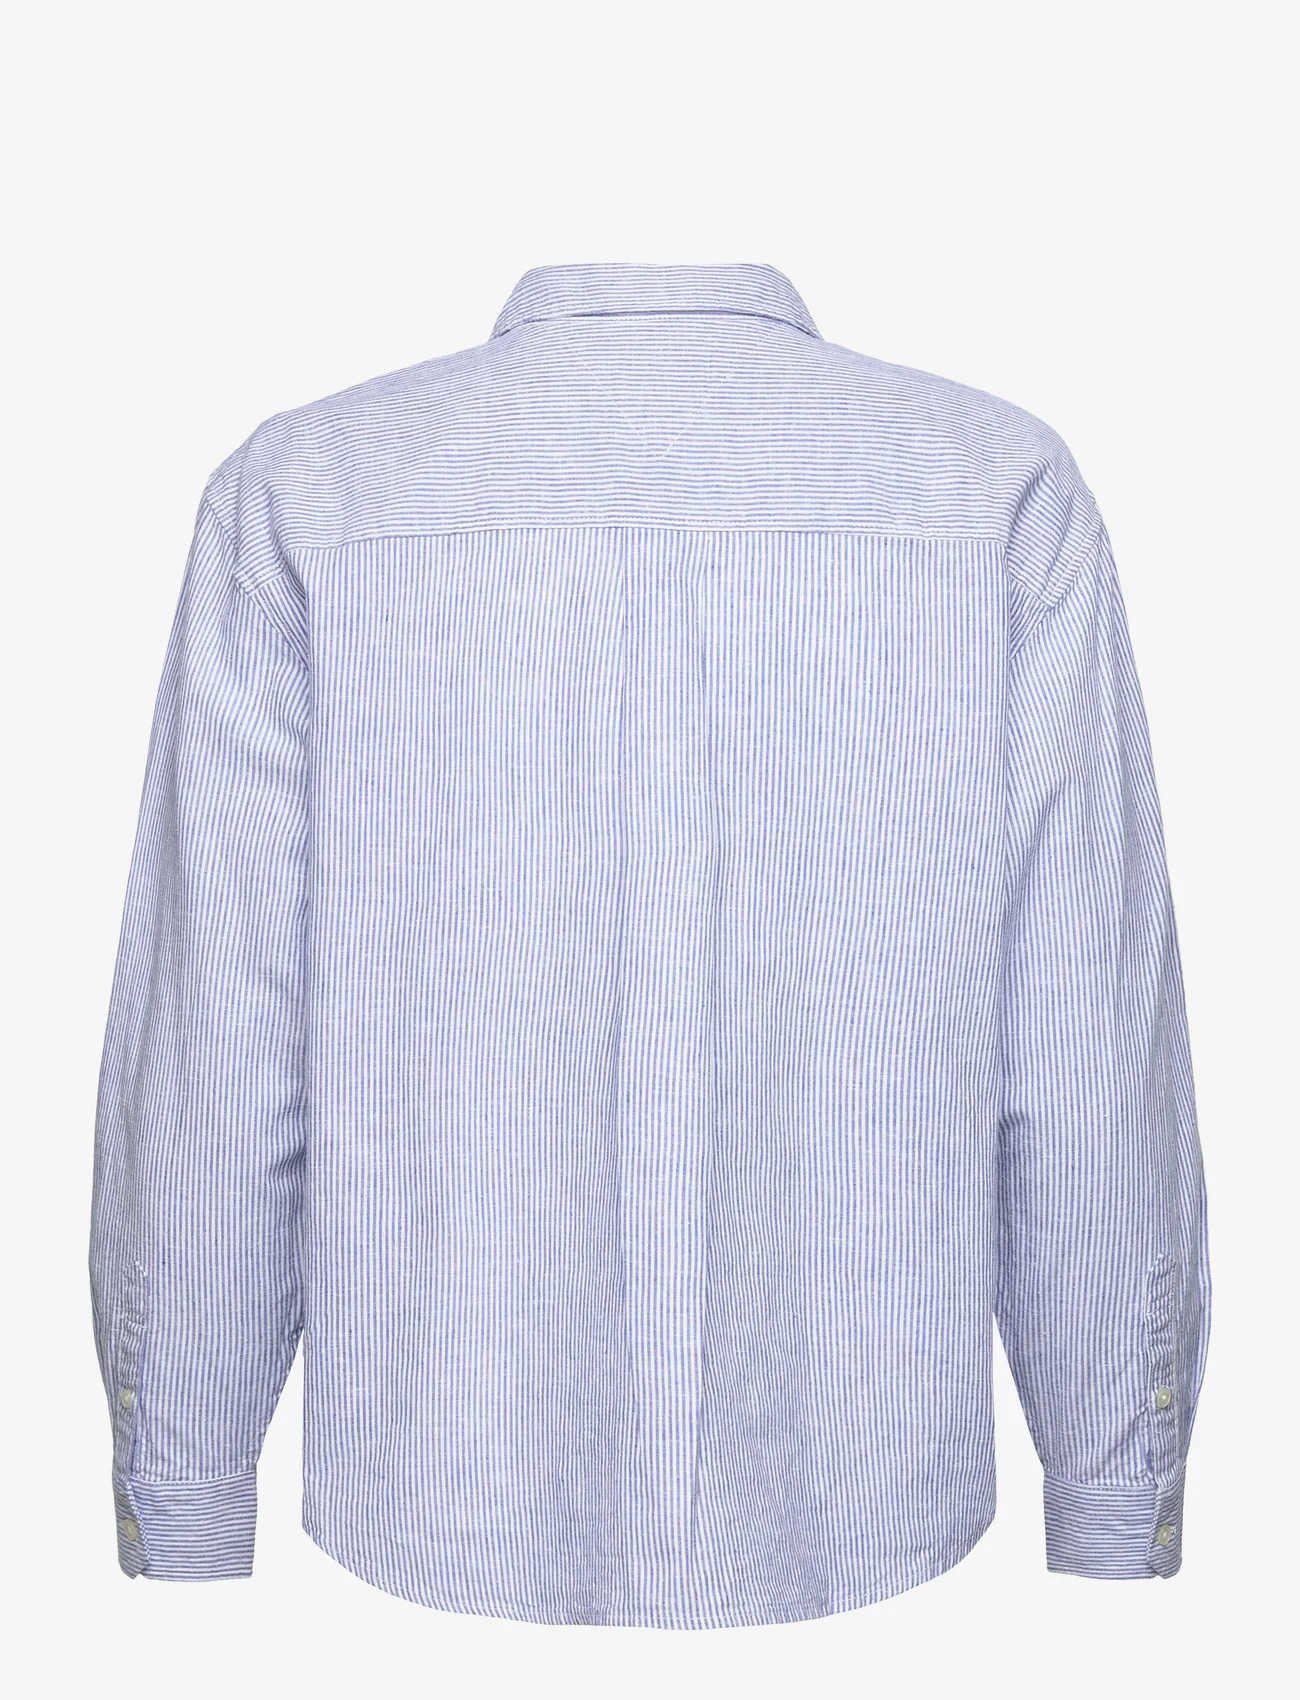 Tommy Jeans - TJW BOXY STRIPE LINEN SHIRT - linnen overhemden - empire blue / stripe - 1